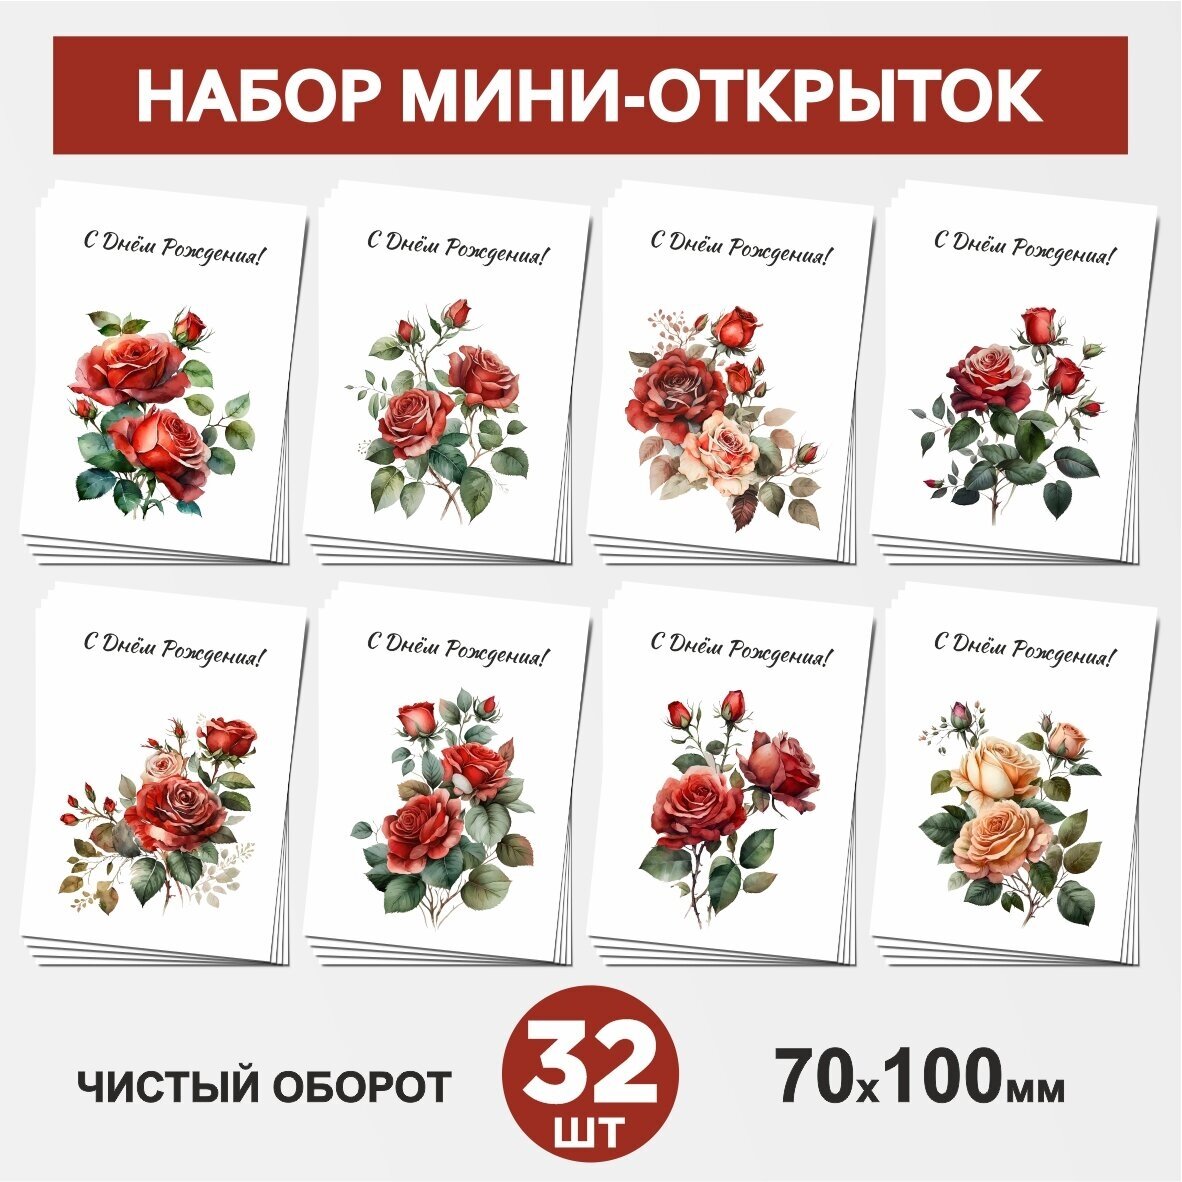 Набор мини-открыток 32 шт, 70х100мм, бирки, карточки, открытки для подарков на День Рождения - Цветы №11.1, postcard_32_flowers_set_11.1